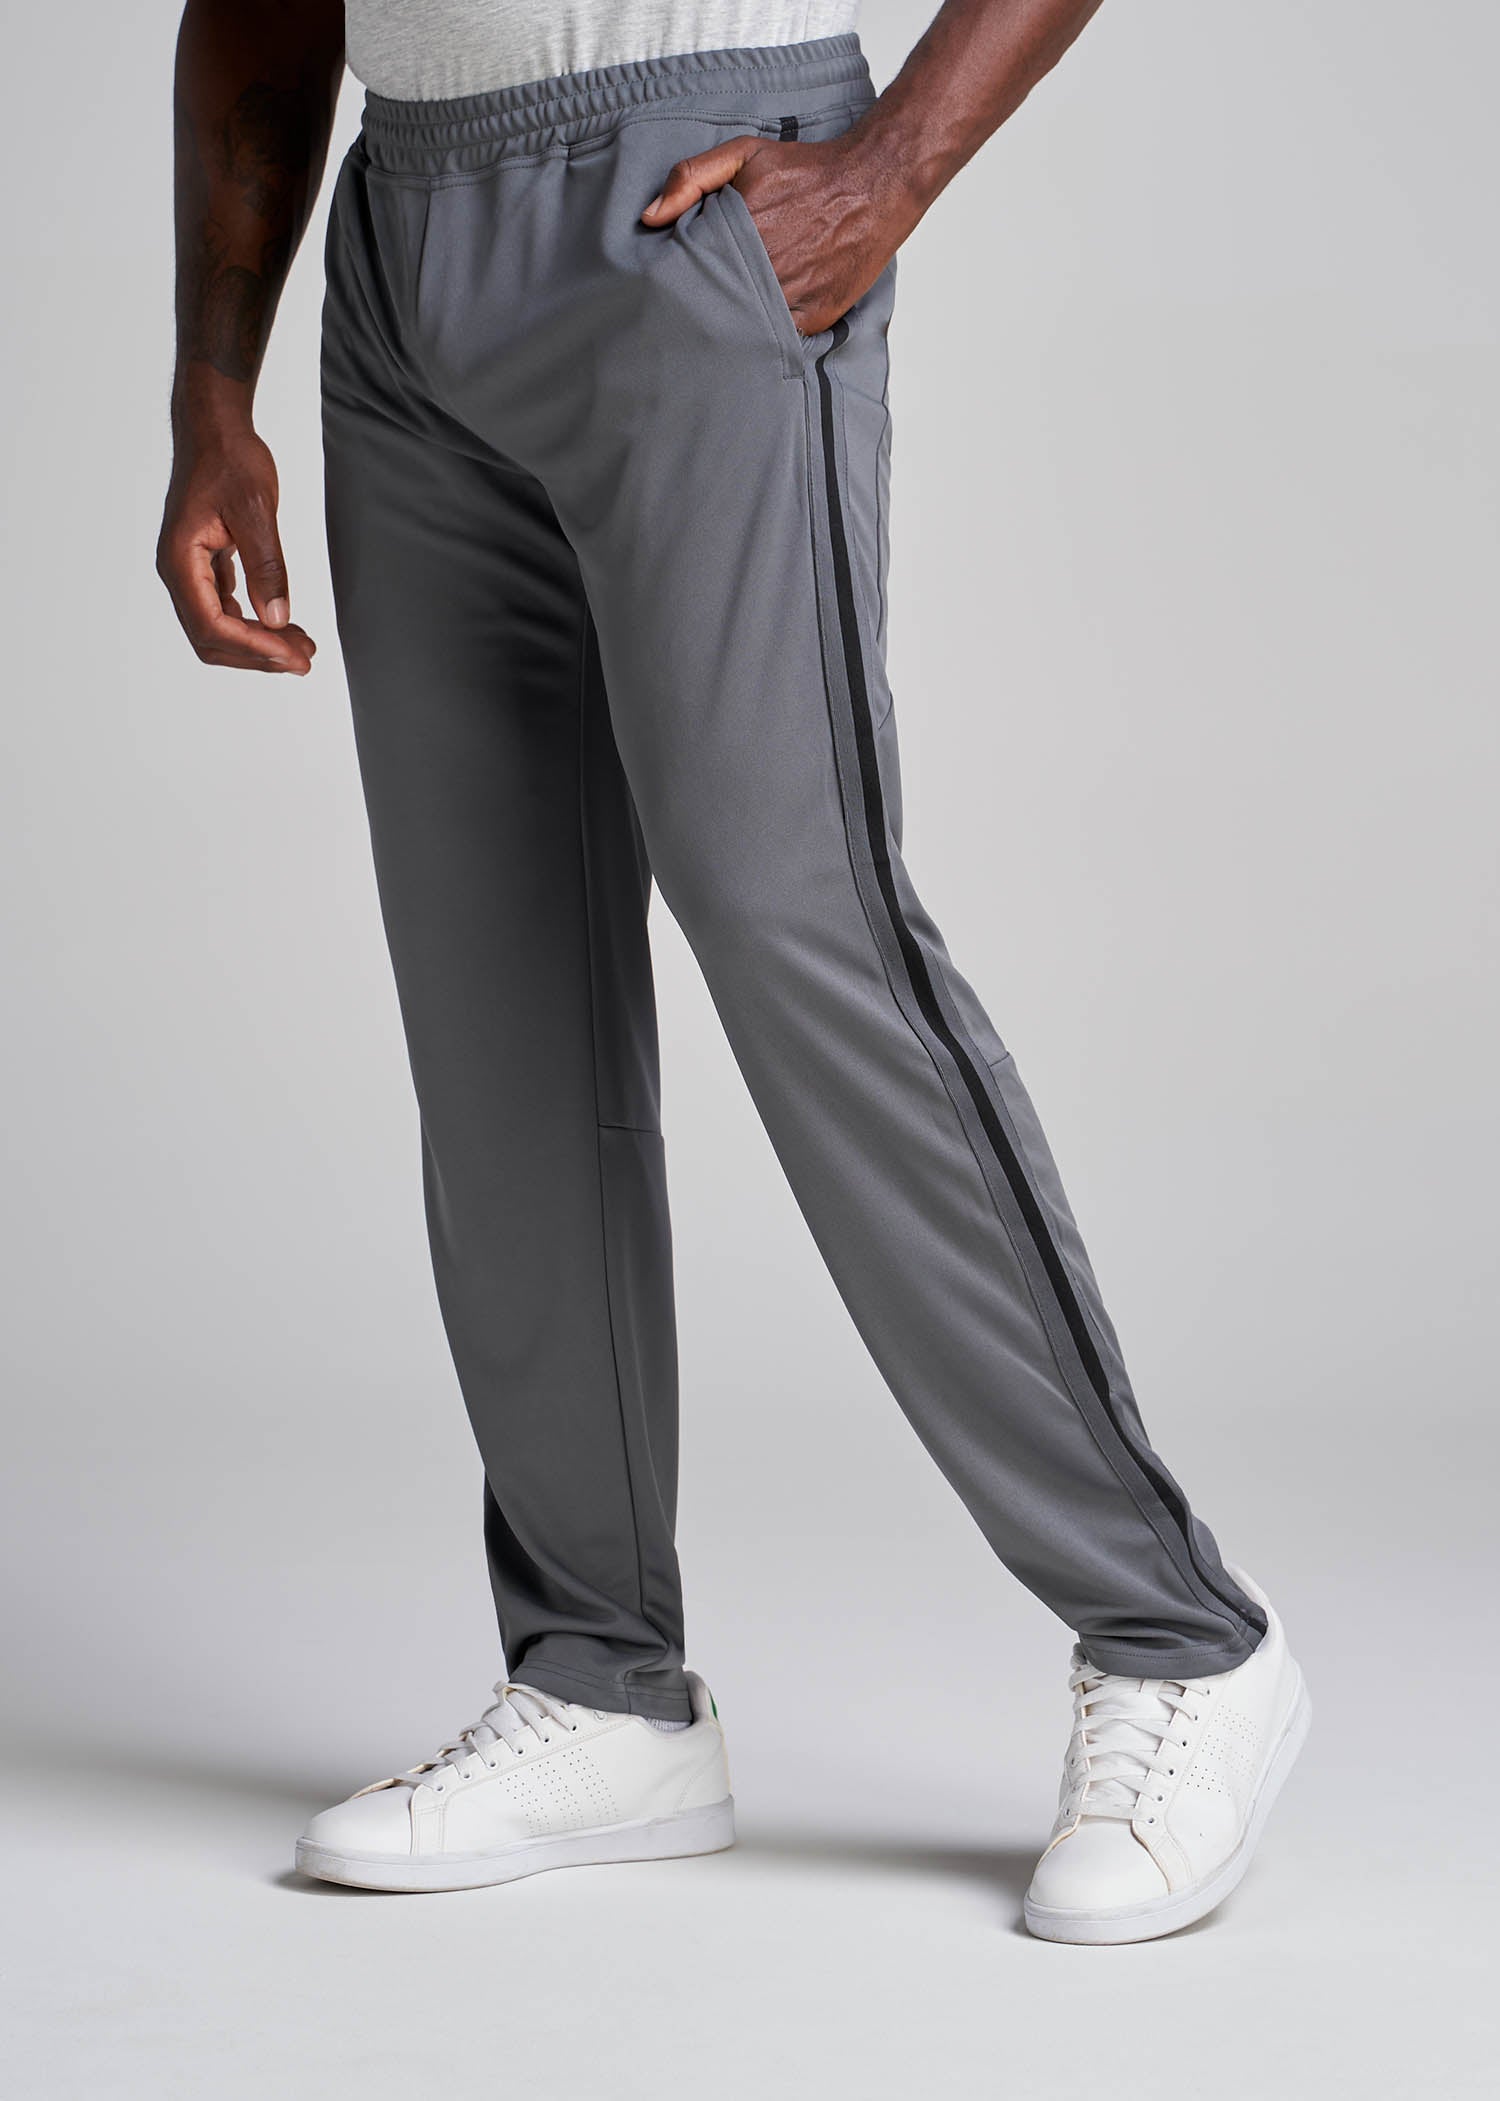  Men's Athletic Pants - Adidas / Men's Athletic Pants